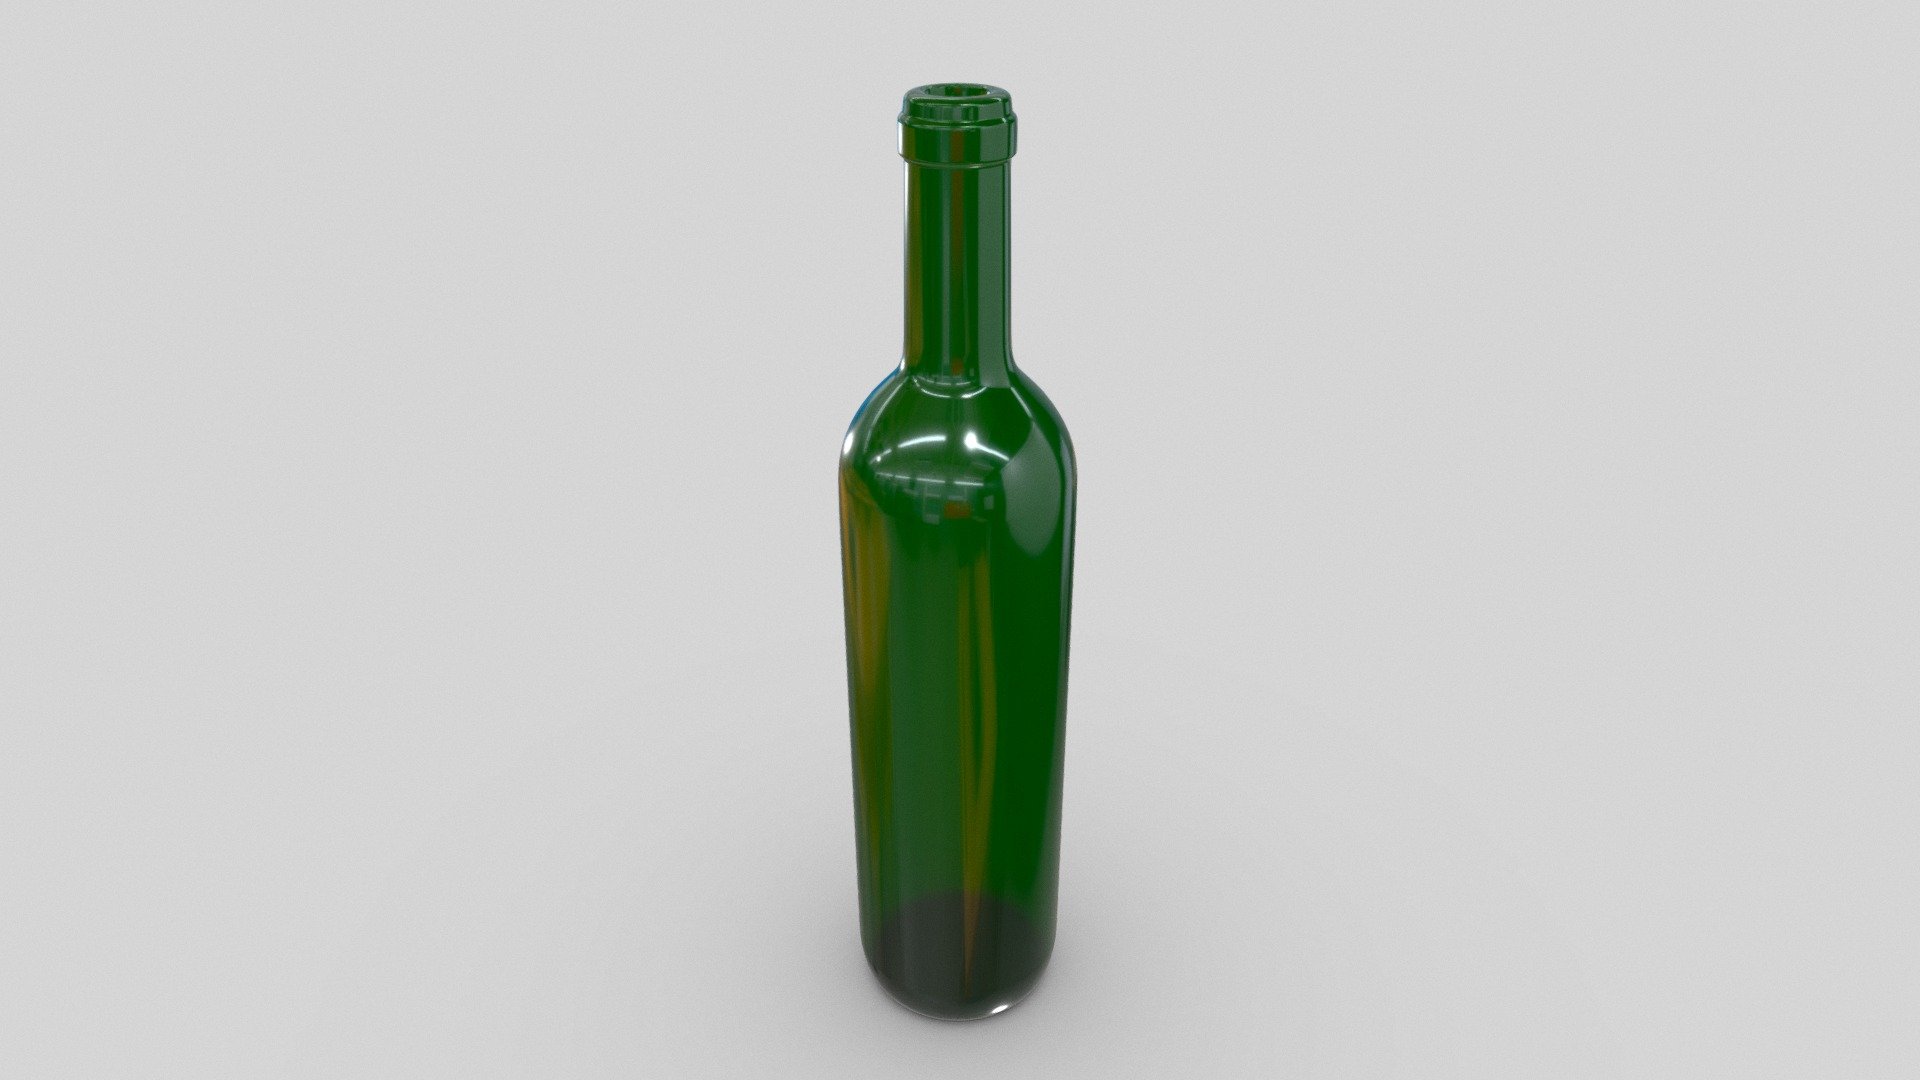 Bottle empty green glass